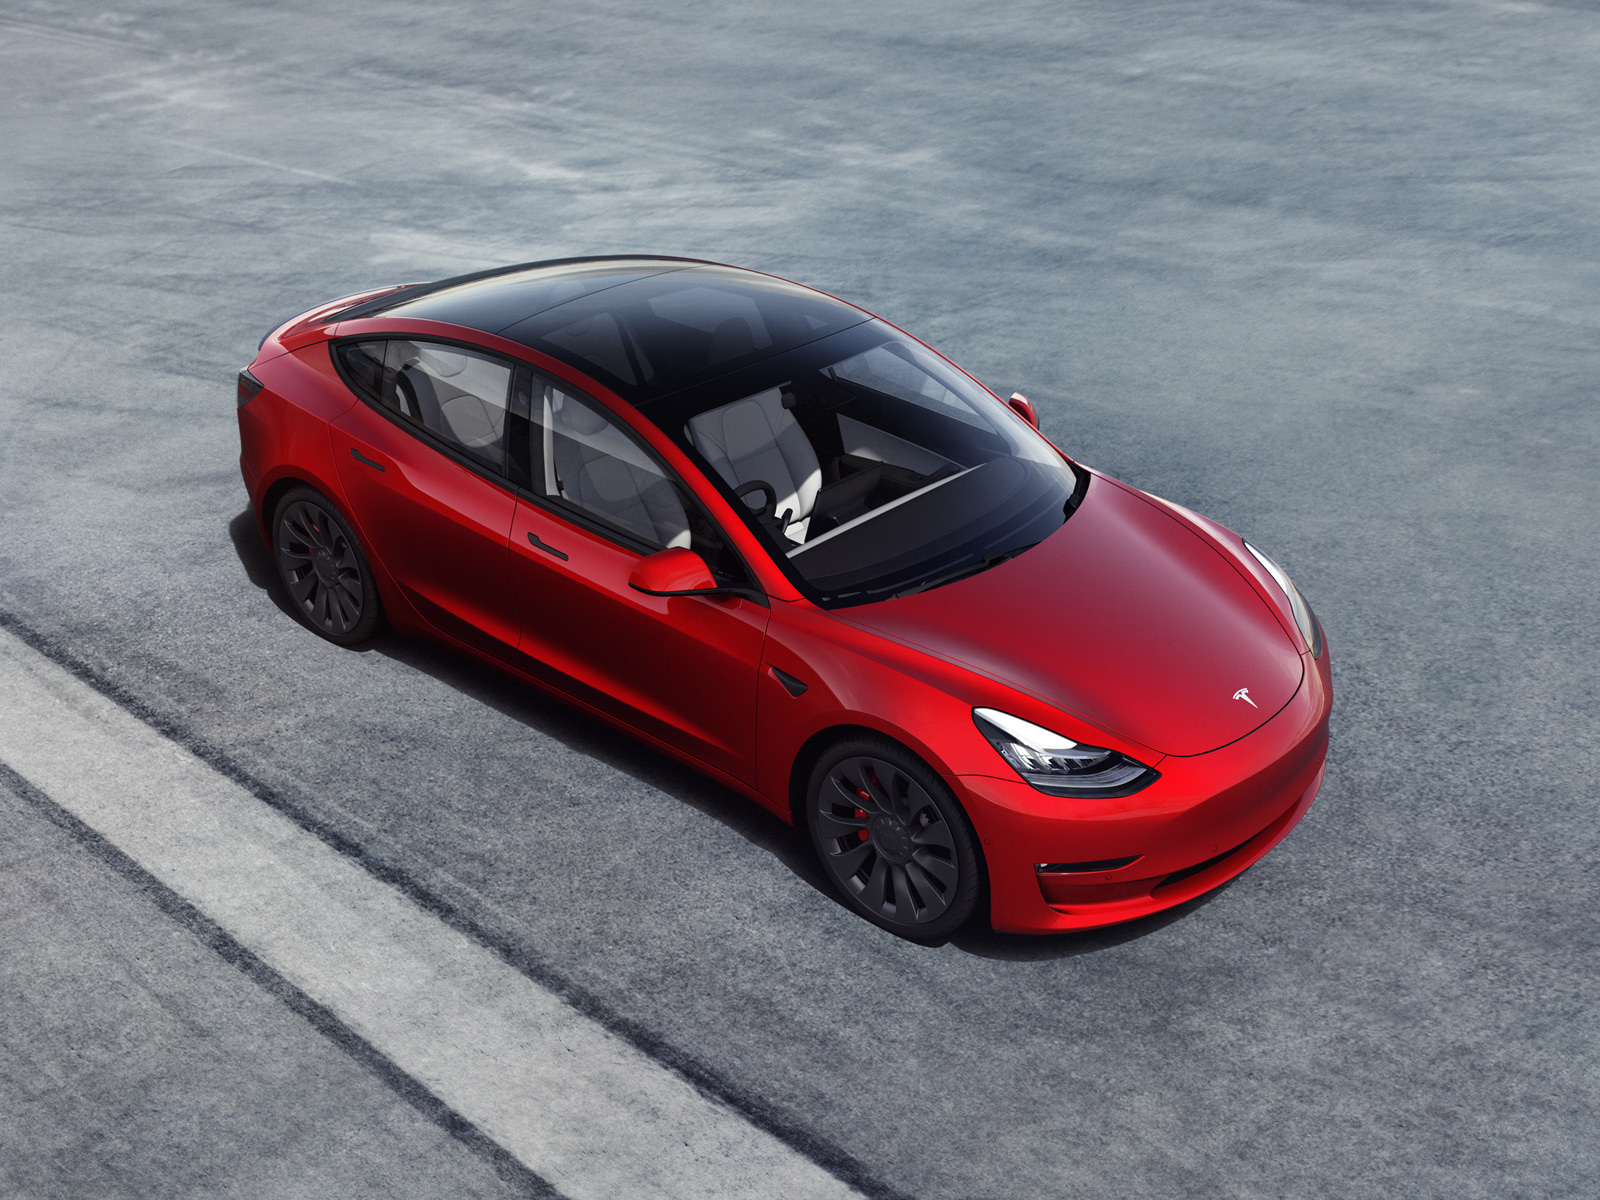 Europe's Best-Seller Car: Tesla (TSLA) Model 3 Outsells Rivals - Bloomberg